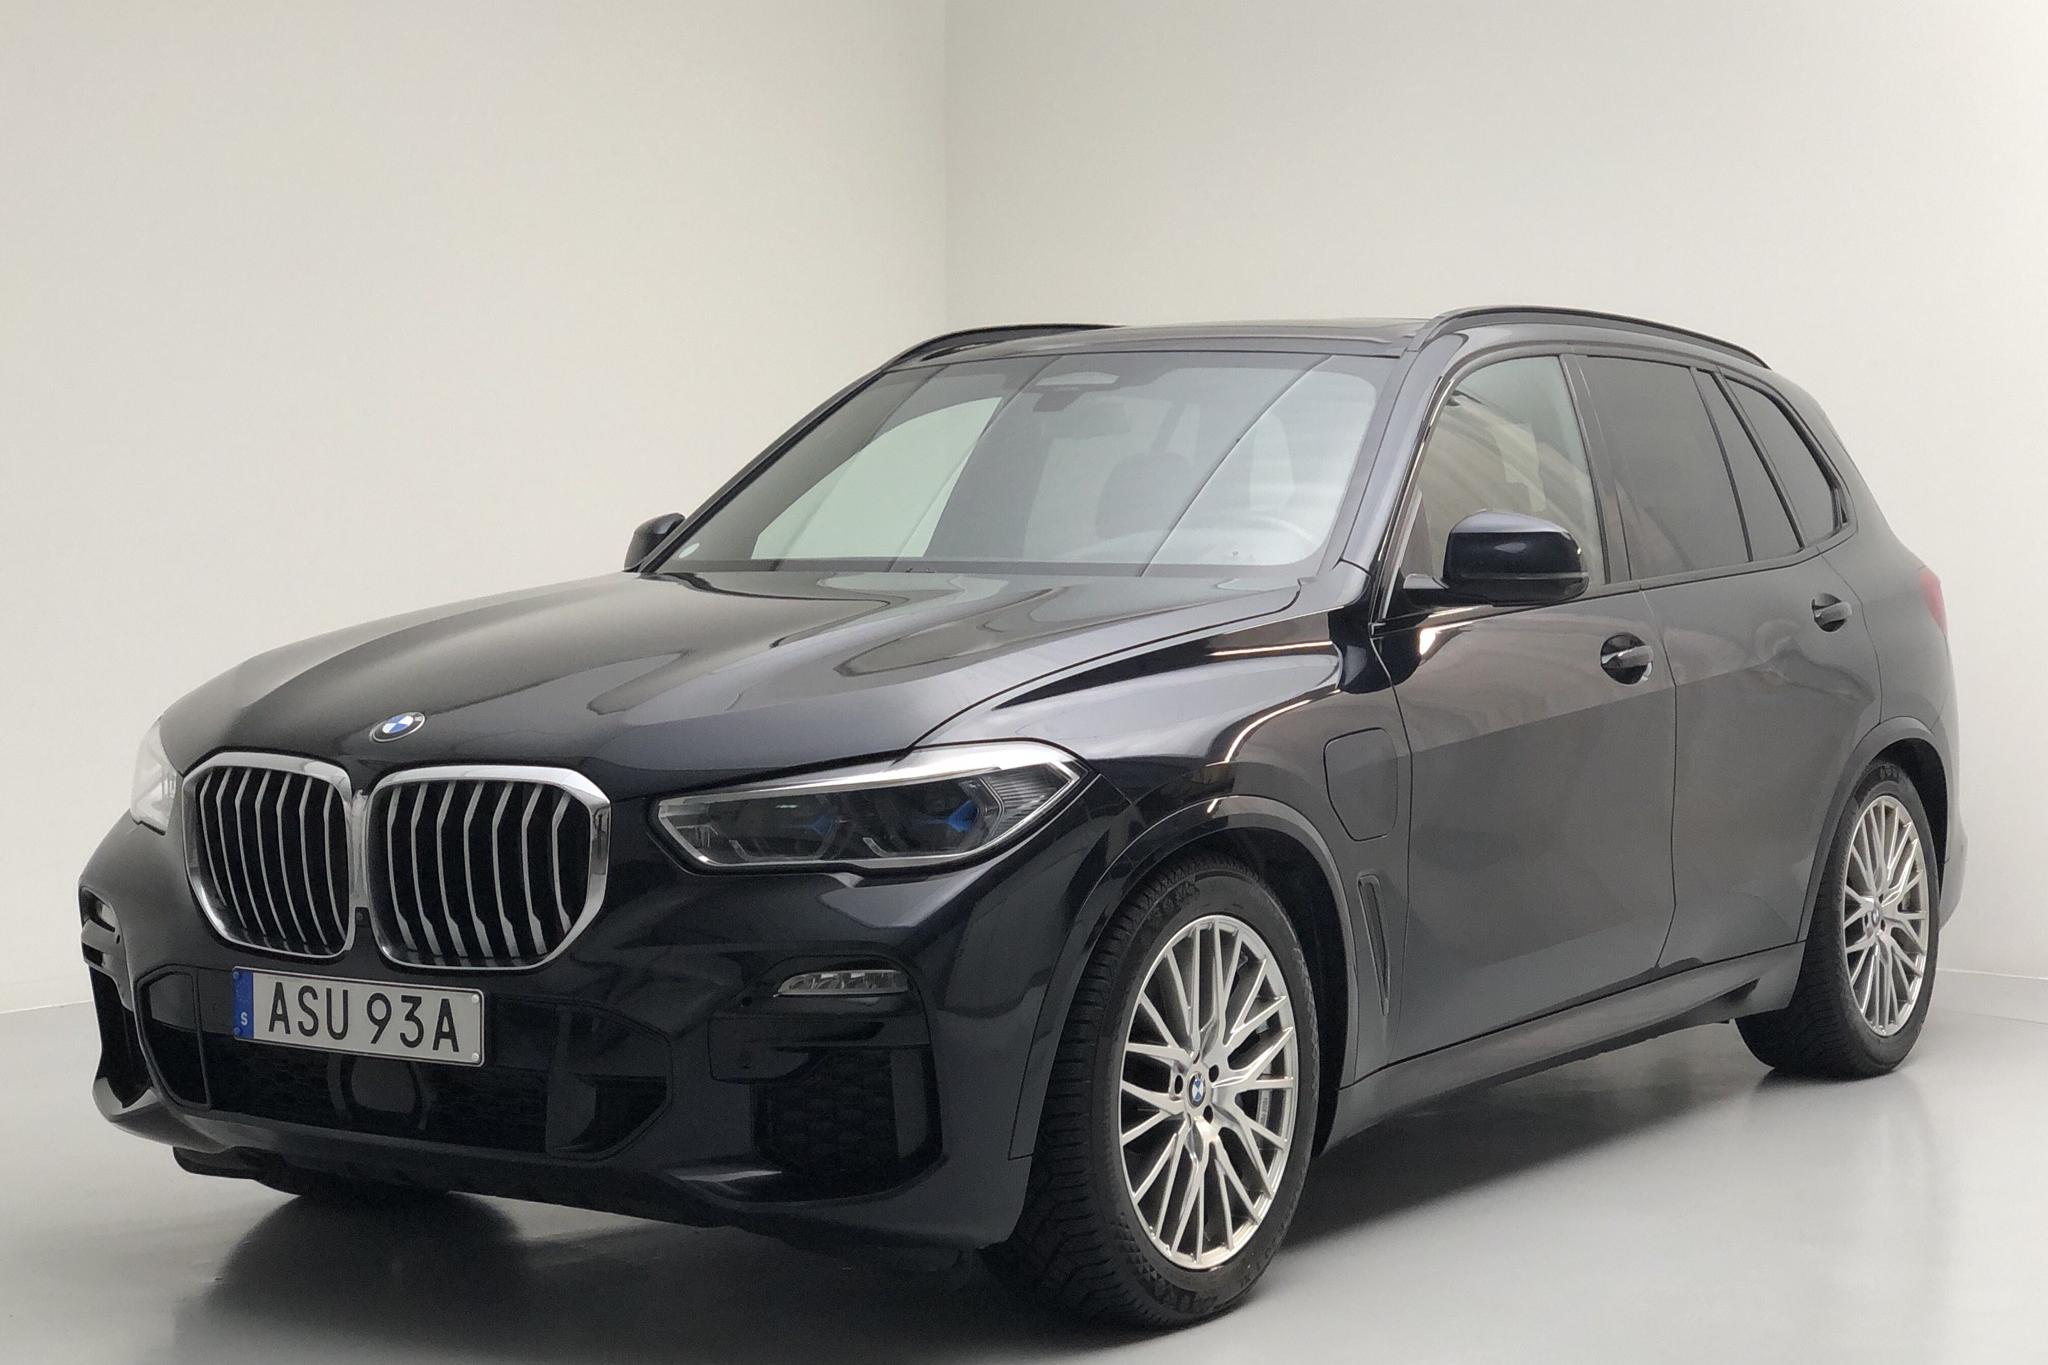 BMW X5 xDrive45e, G05 (394hk) - 66 900 km - Automatic - black - 2020